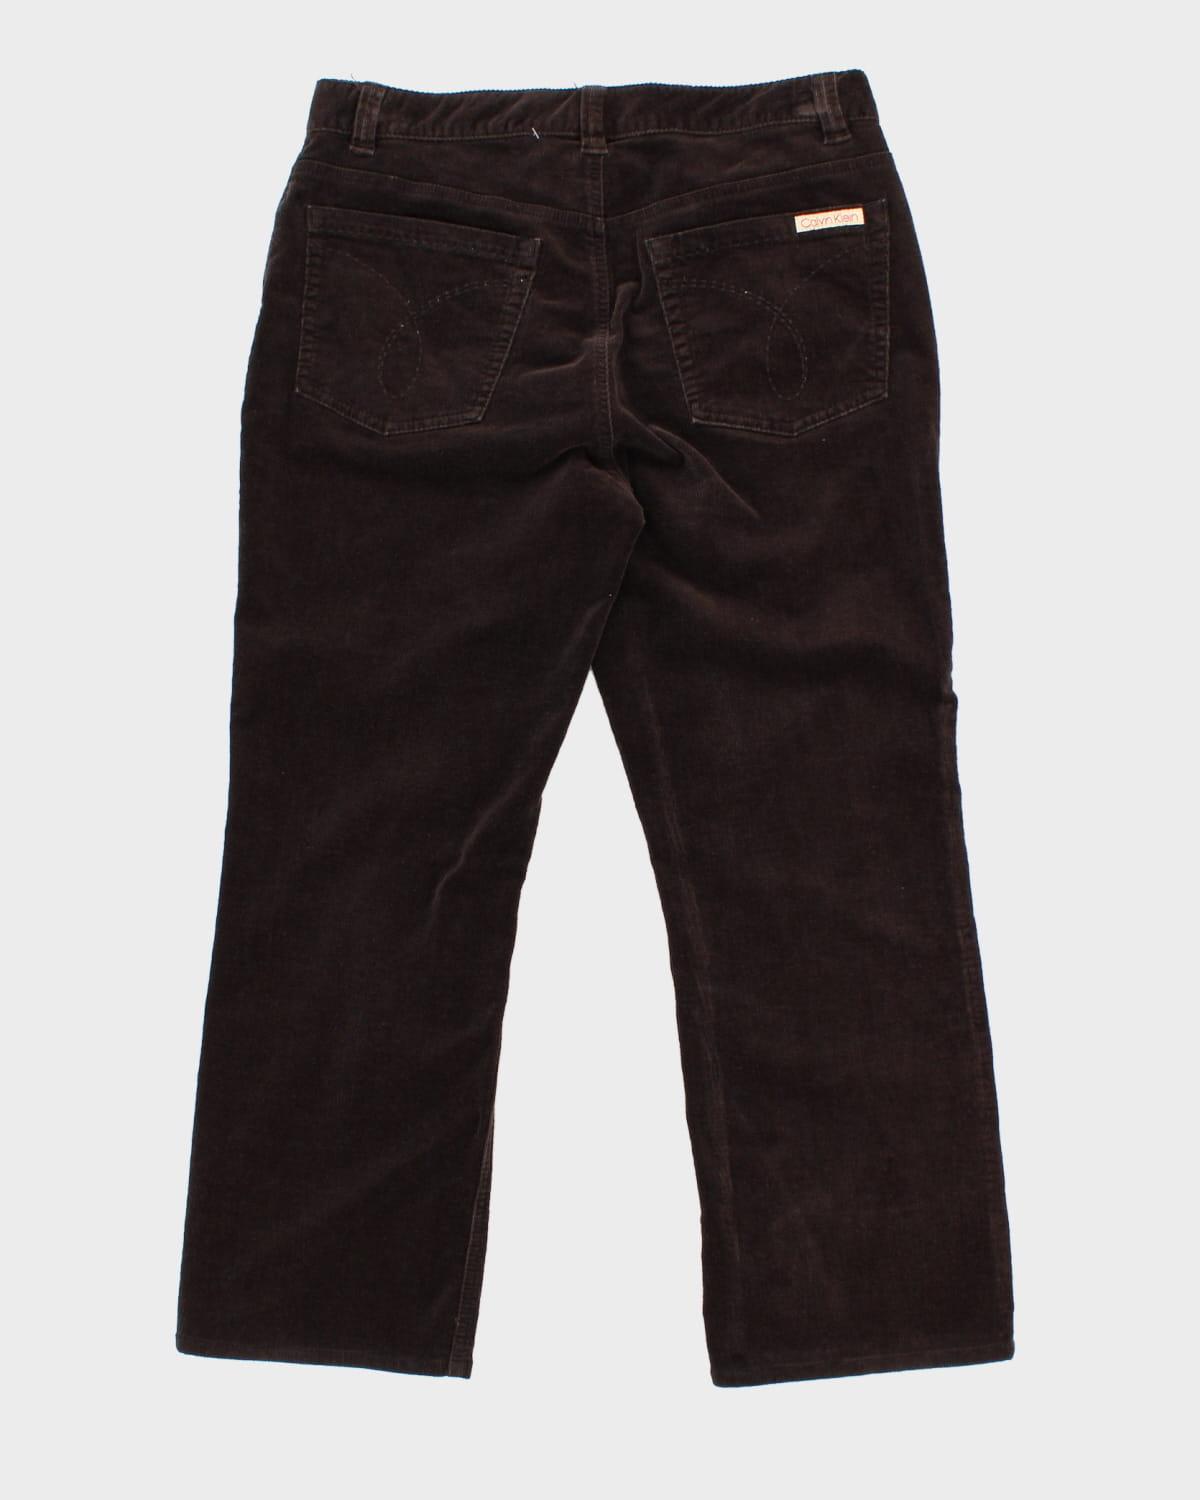 Calvin Klein Brown Corduroy Trousers - W34 L27